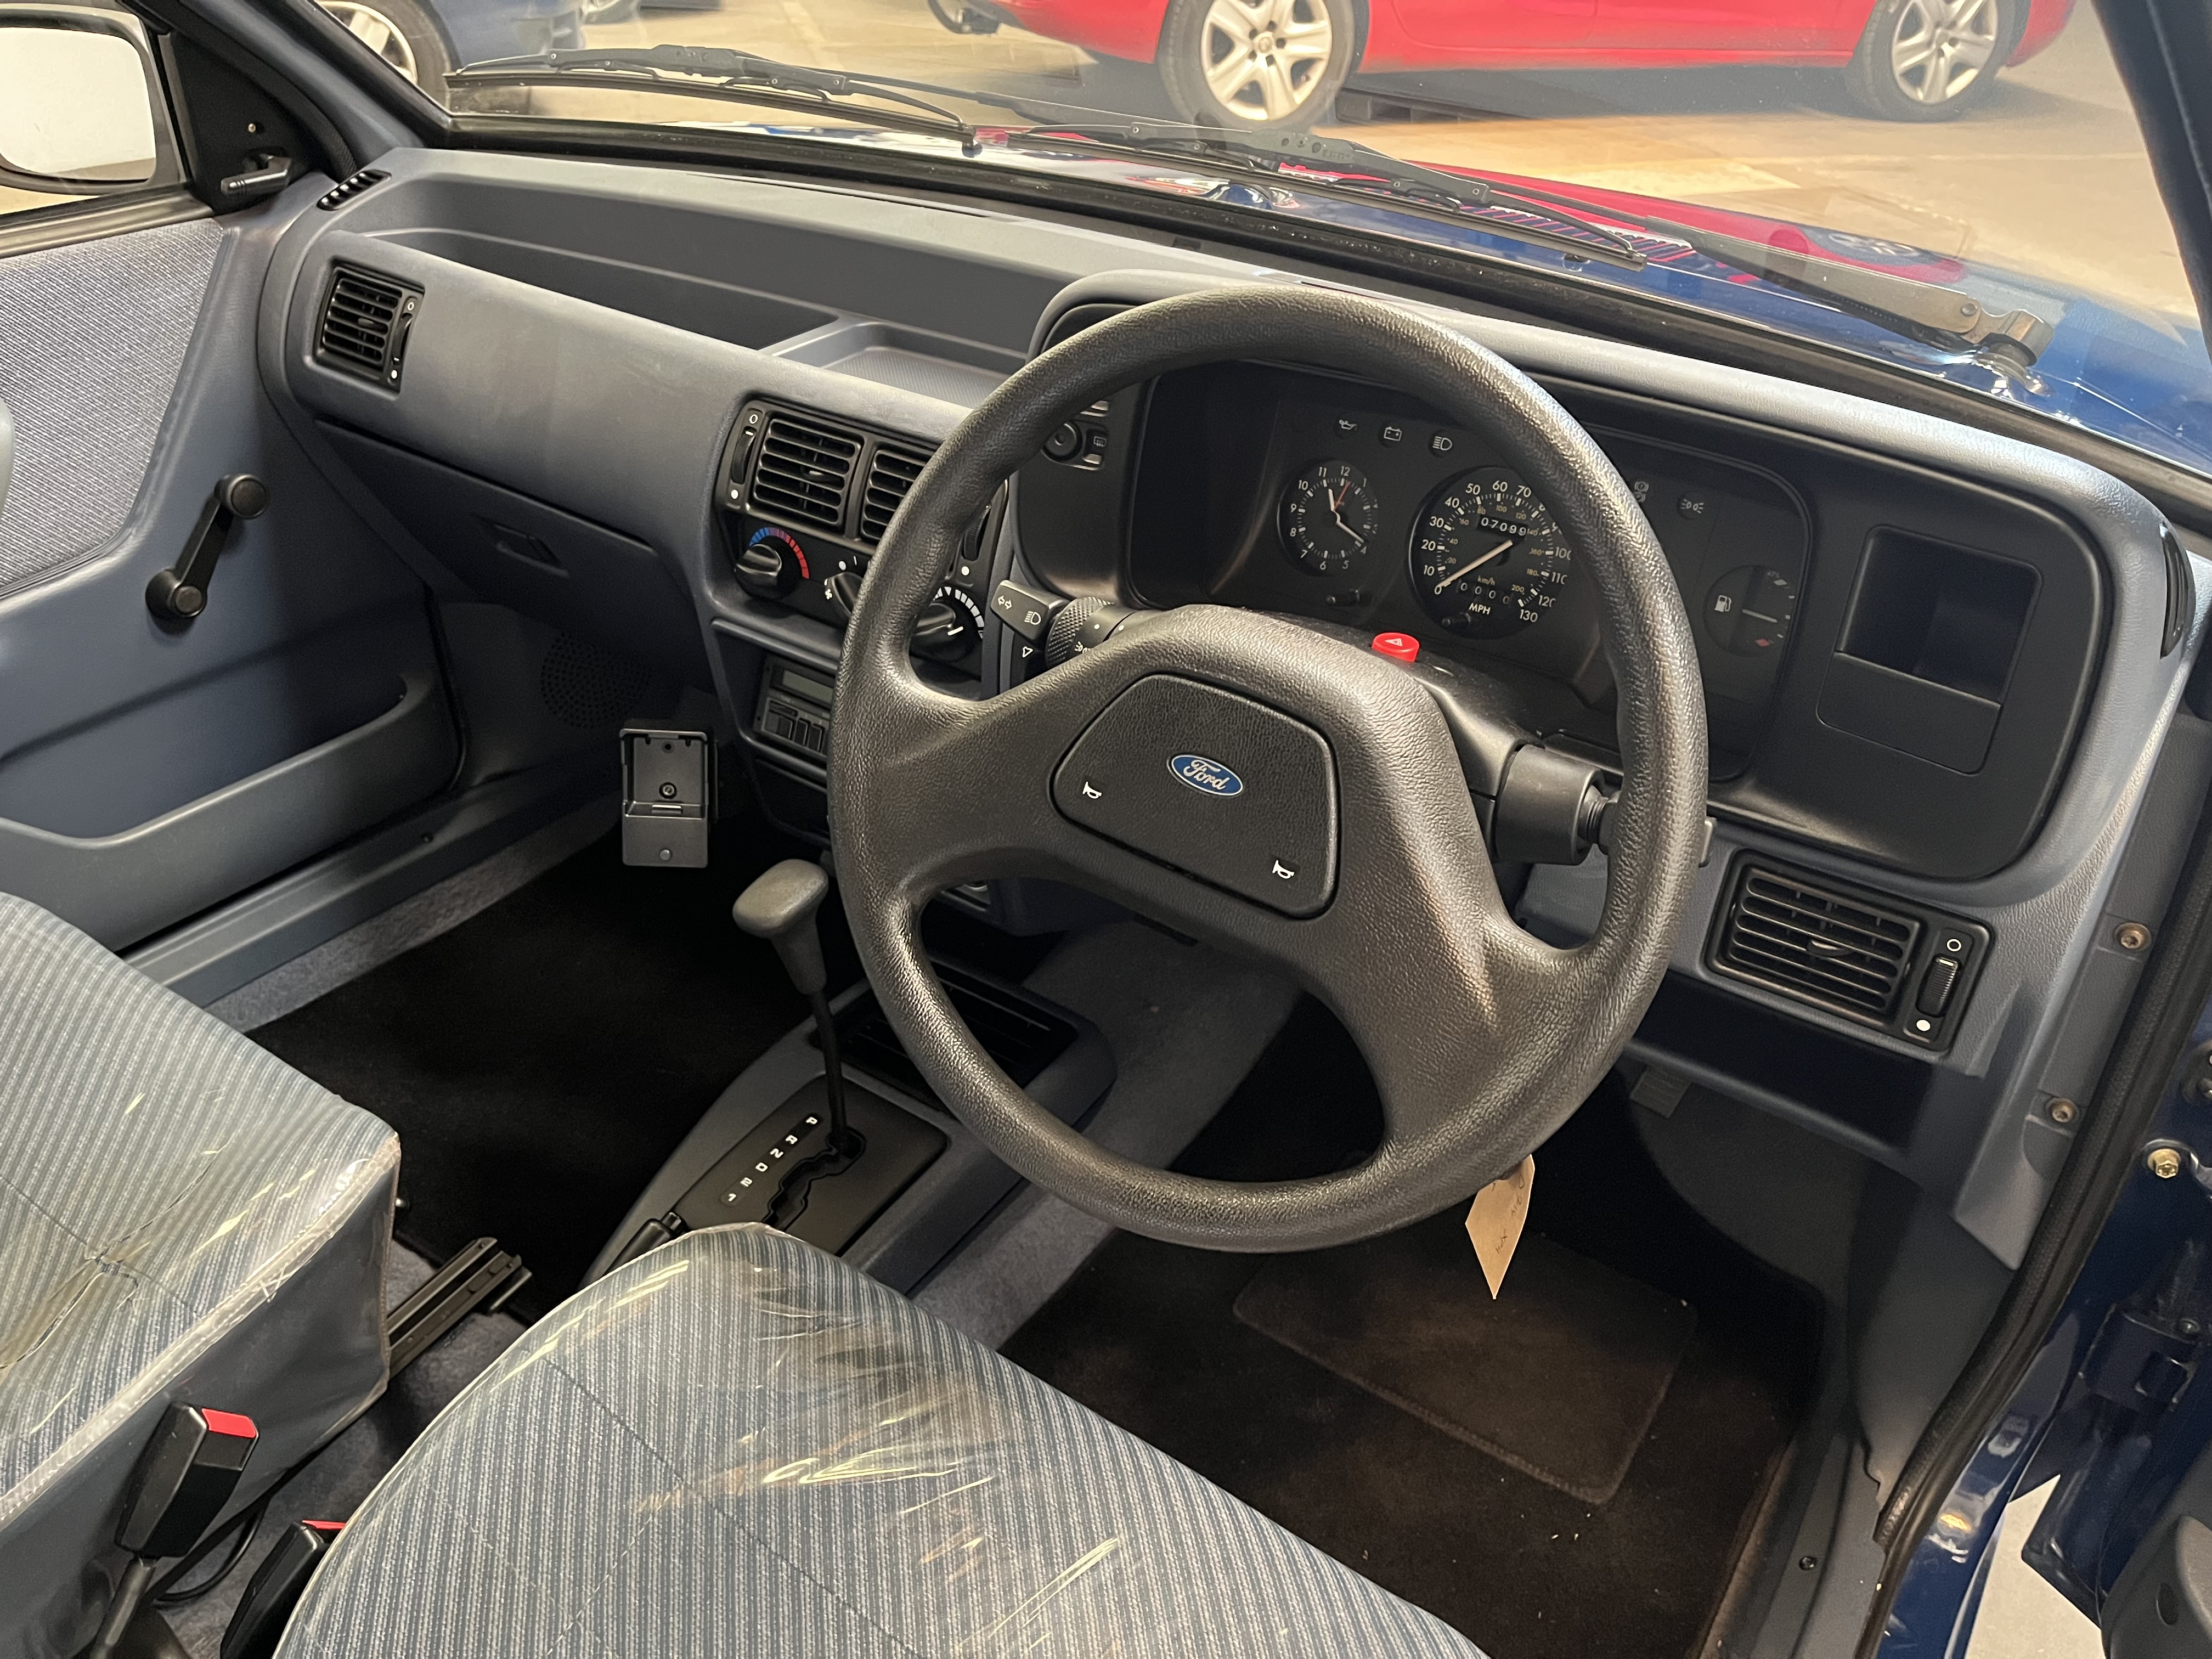 1986 Ford Escort L Estate Auto - 1597cc - Image 9 of 18